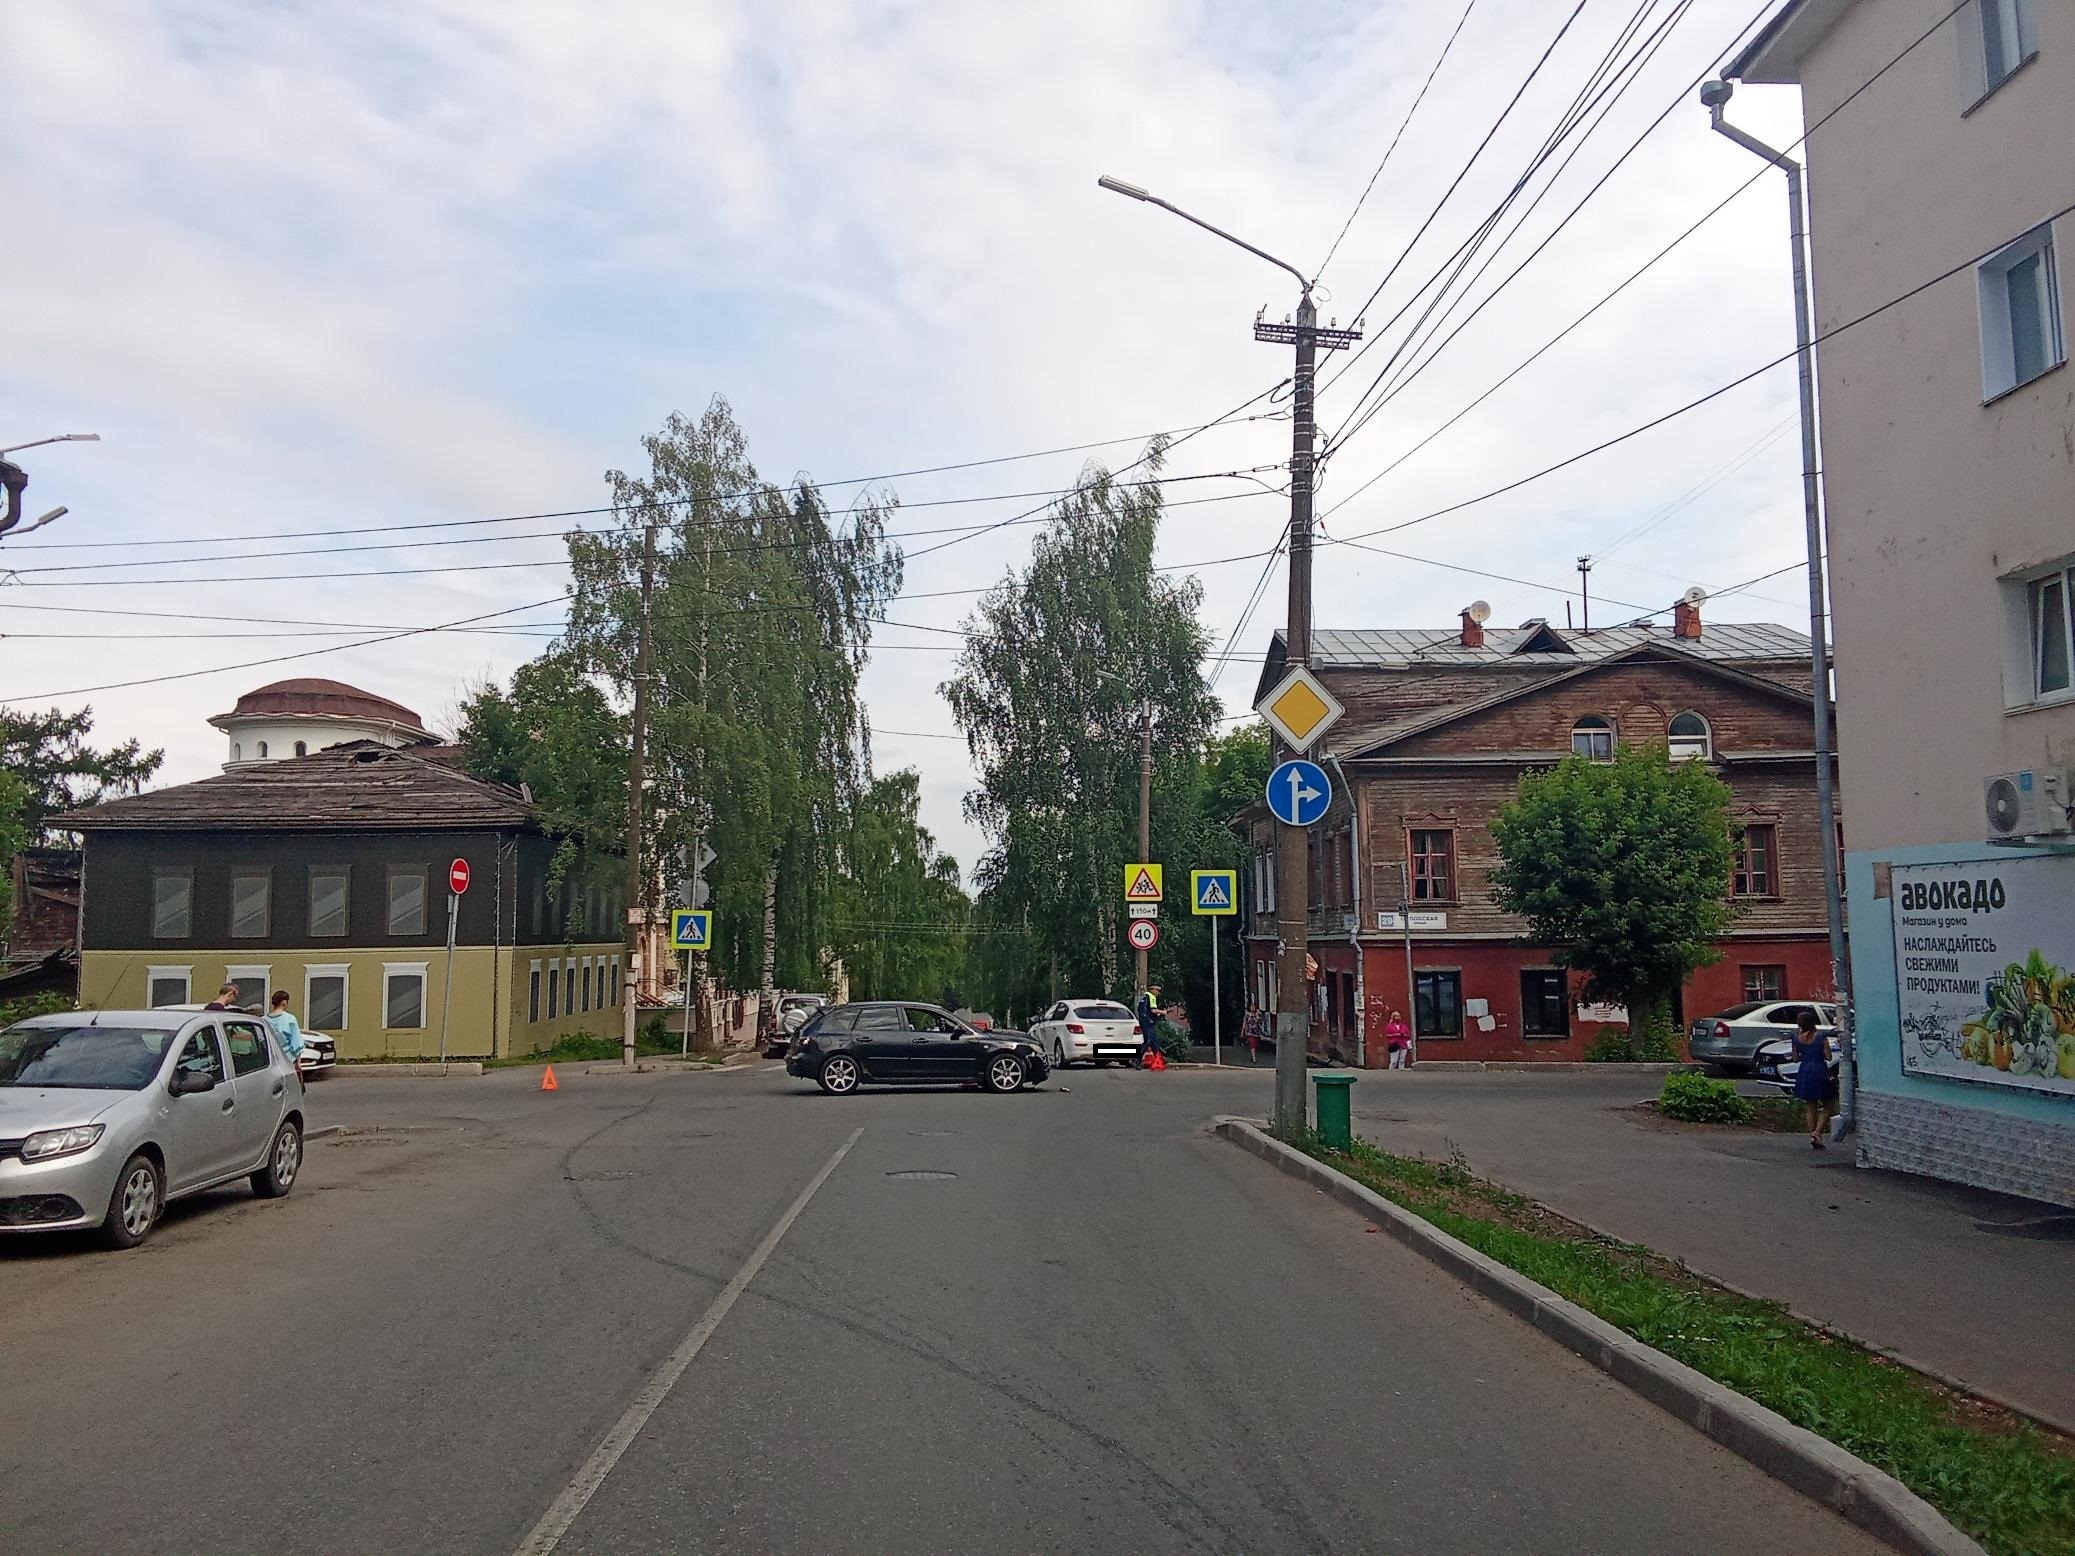 В Кирове на улице Свободы столкнулись две иномарки: есть пострадавший